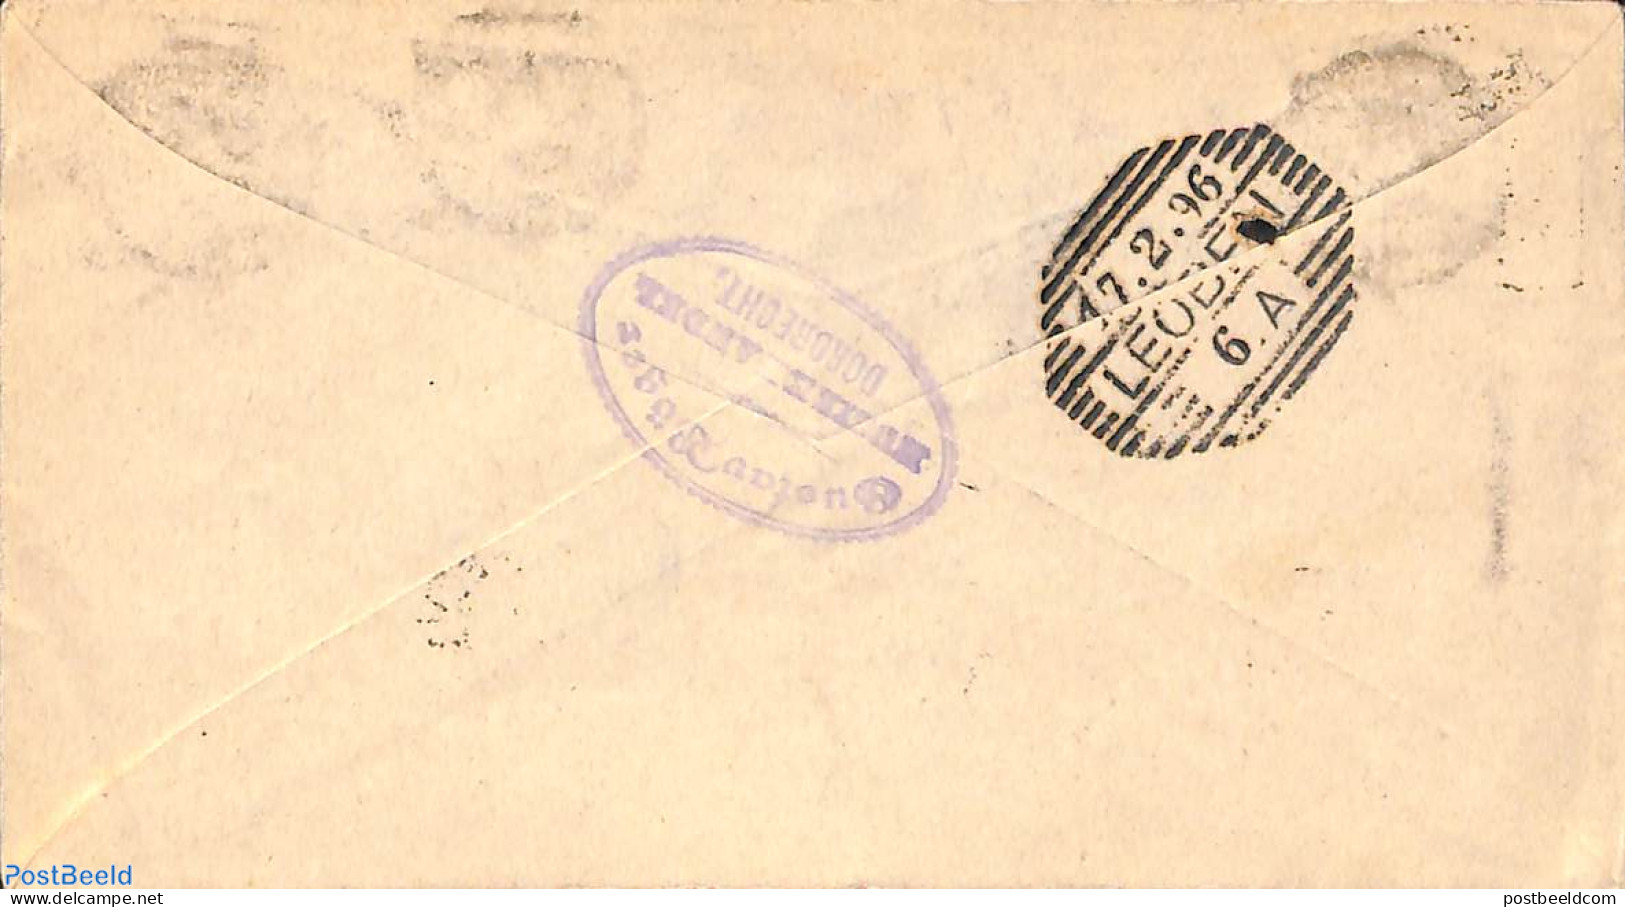 Netherlands 1896 Envelope 5c, Uprated, From Dordrecht To Leoben, Austria, Used Postal Stationary - Storia Postale